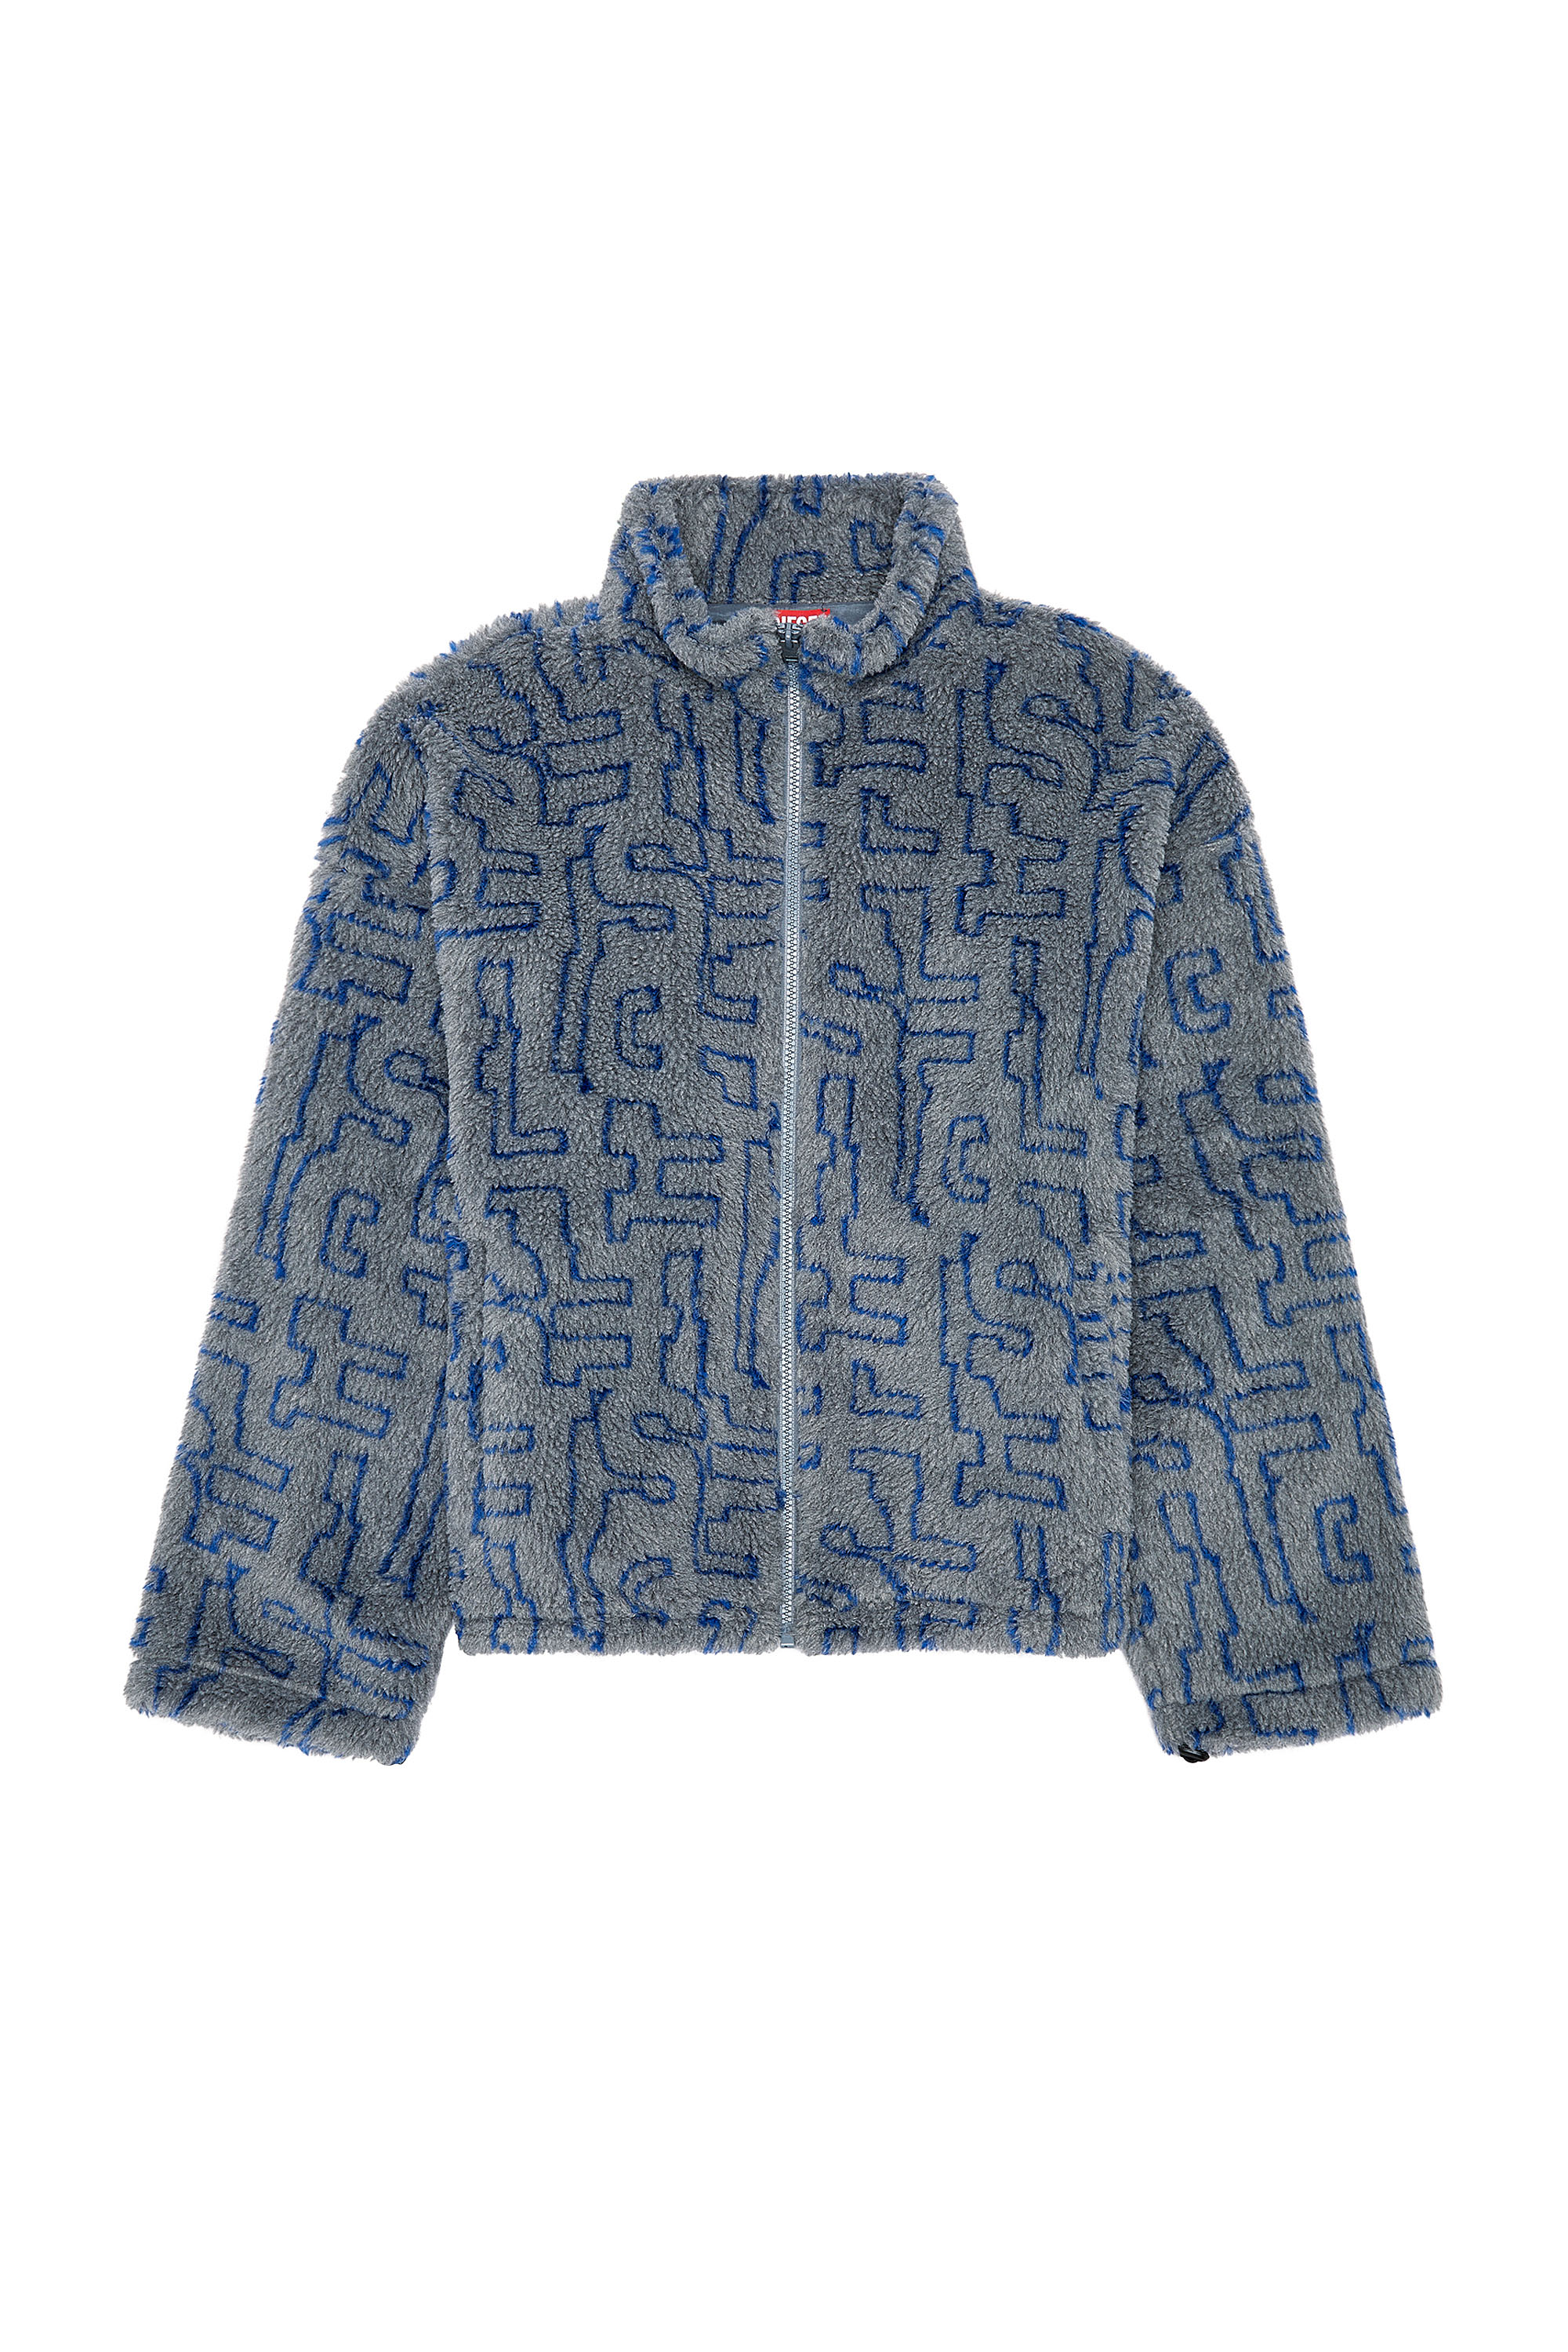 Jacket Louis Vuitton x Supreme Blue size M International in Denim